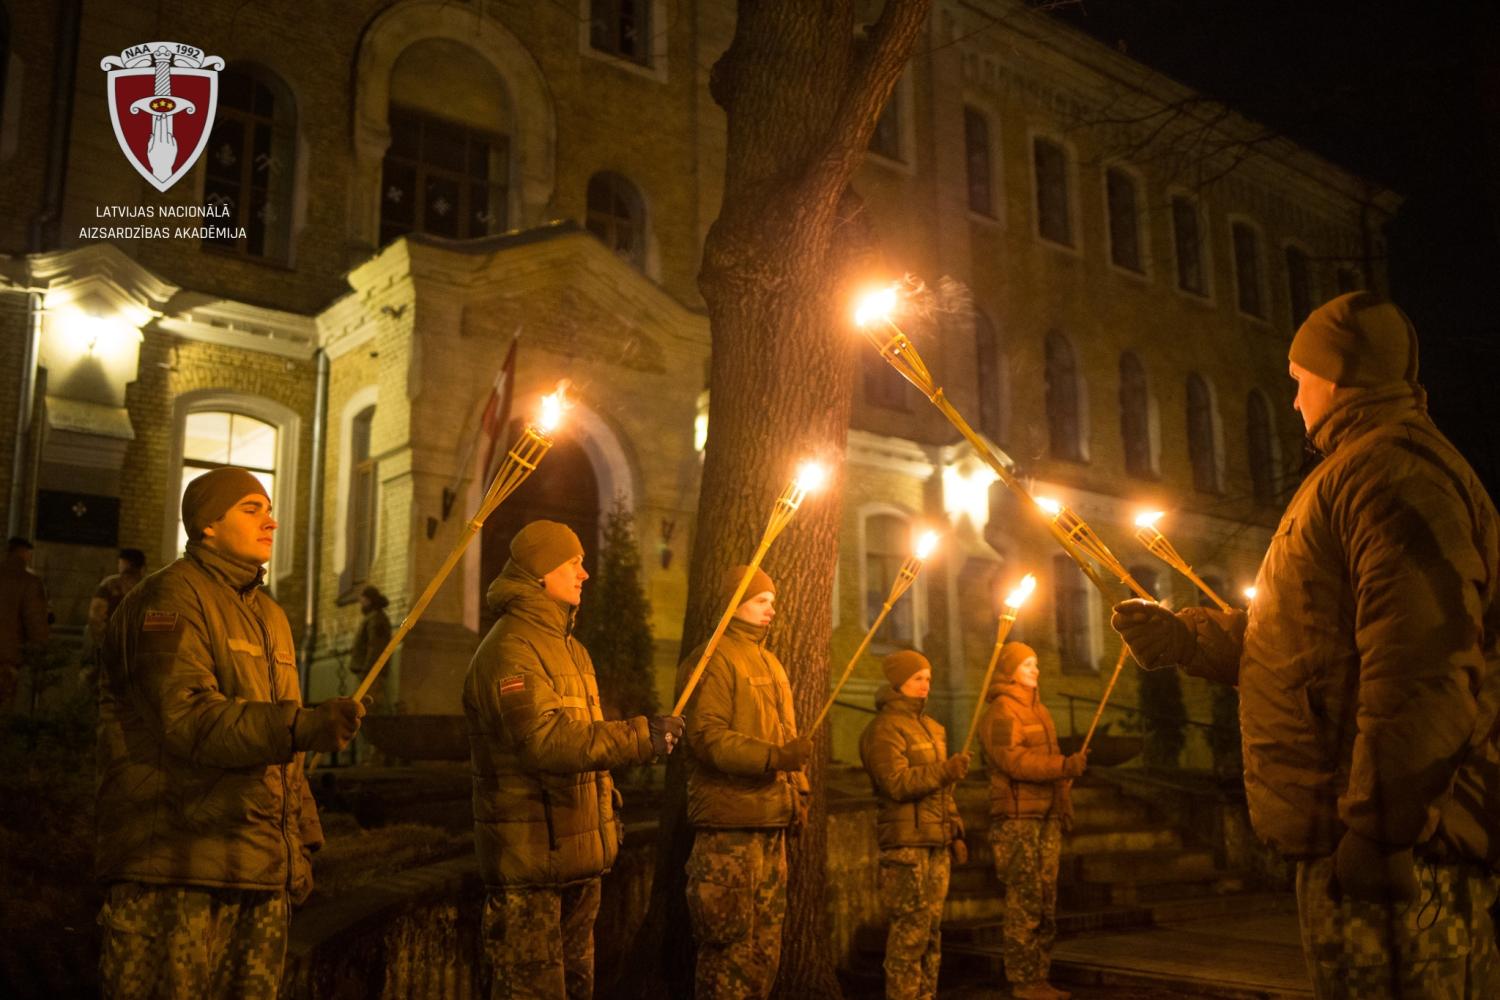 Rīgā notiks tradicionālais “Baltās nakts” skrējiens no Latvijas Nacionālās aizsardzības akadēmijas